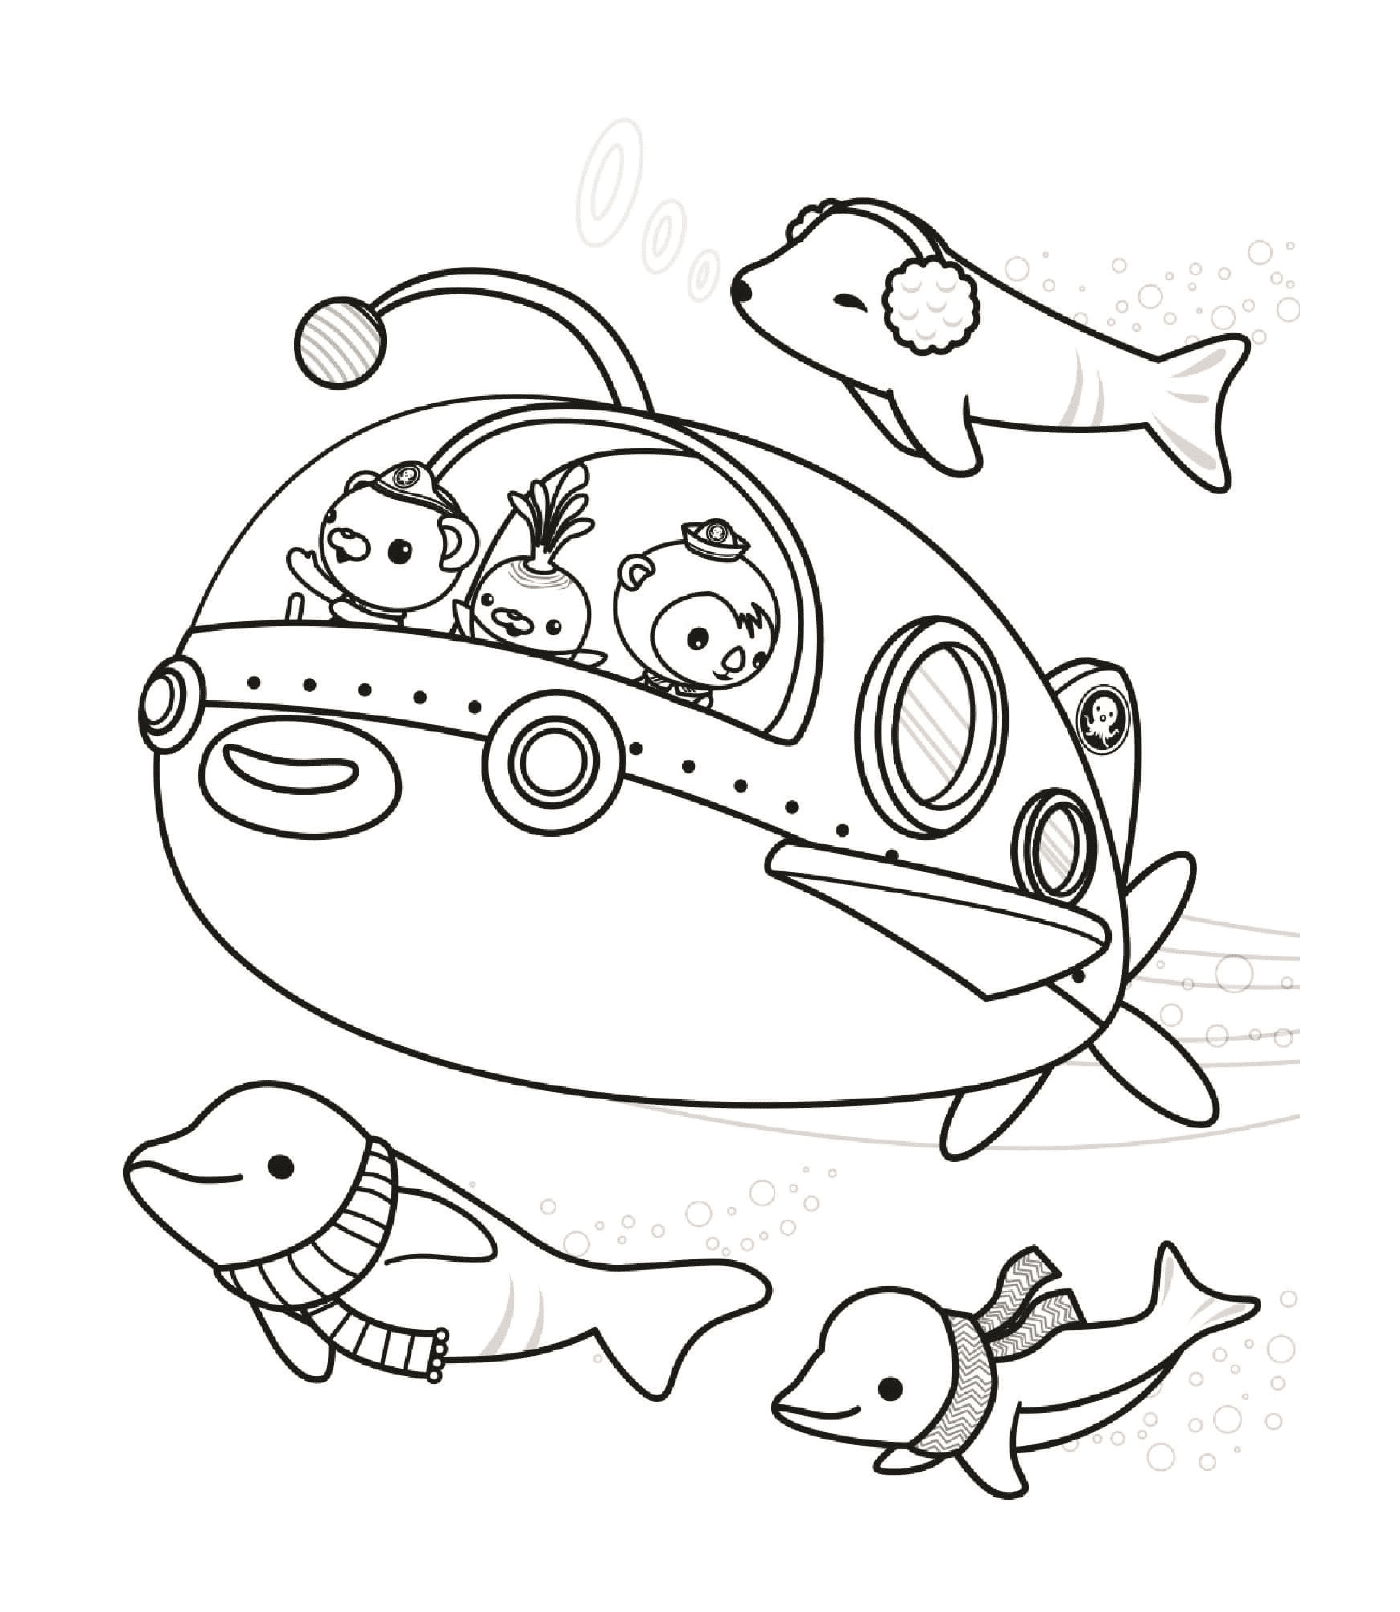  探索海床,一艘有动物的潜水艇 